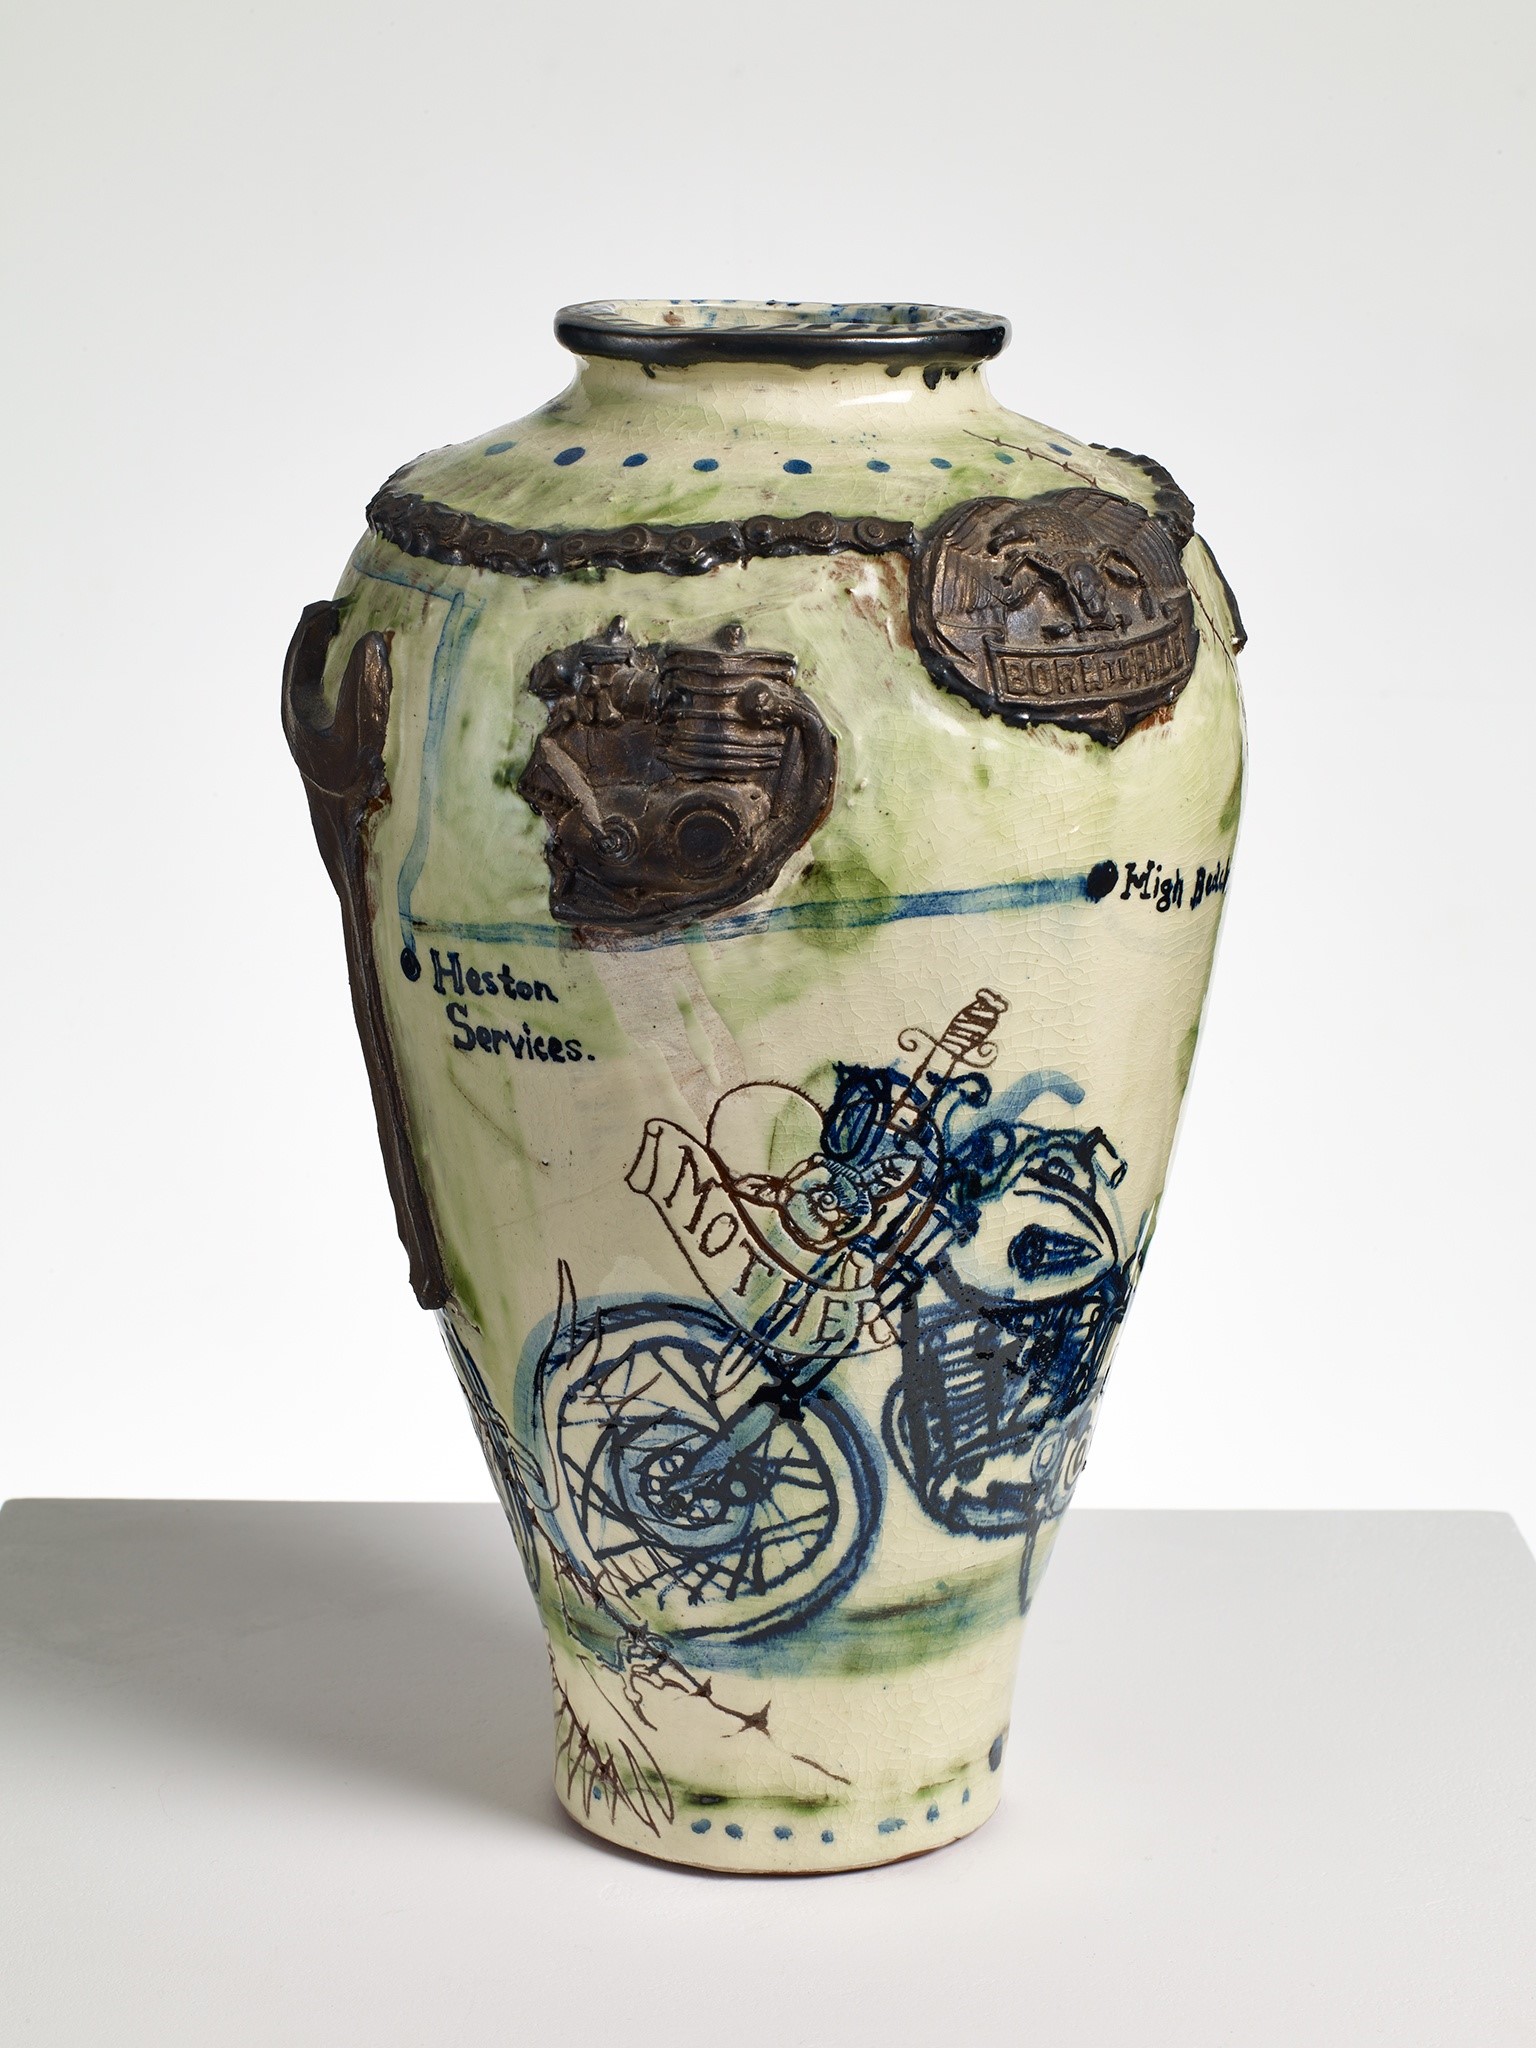 Biker Pot, 1992, Grayson Perry (Courtesy the artist and Victoria Miro, London / Venice)